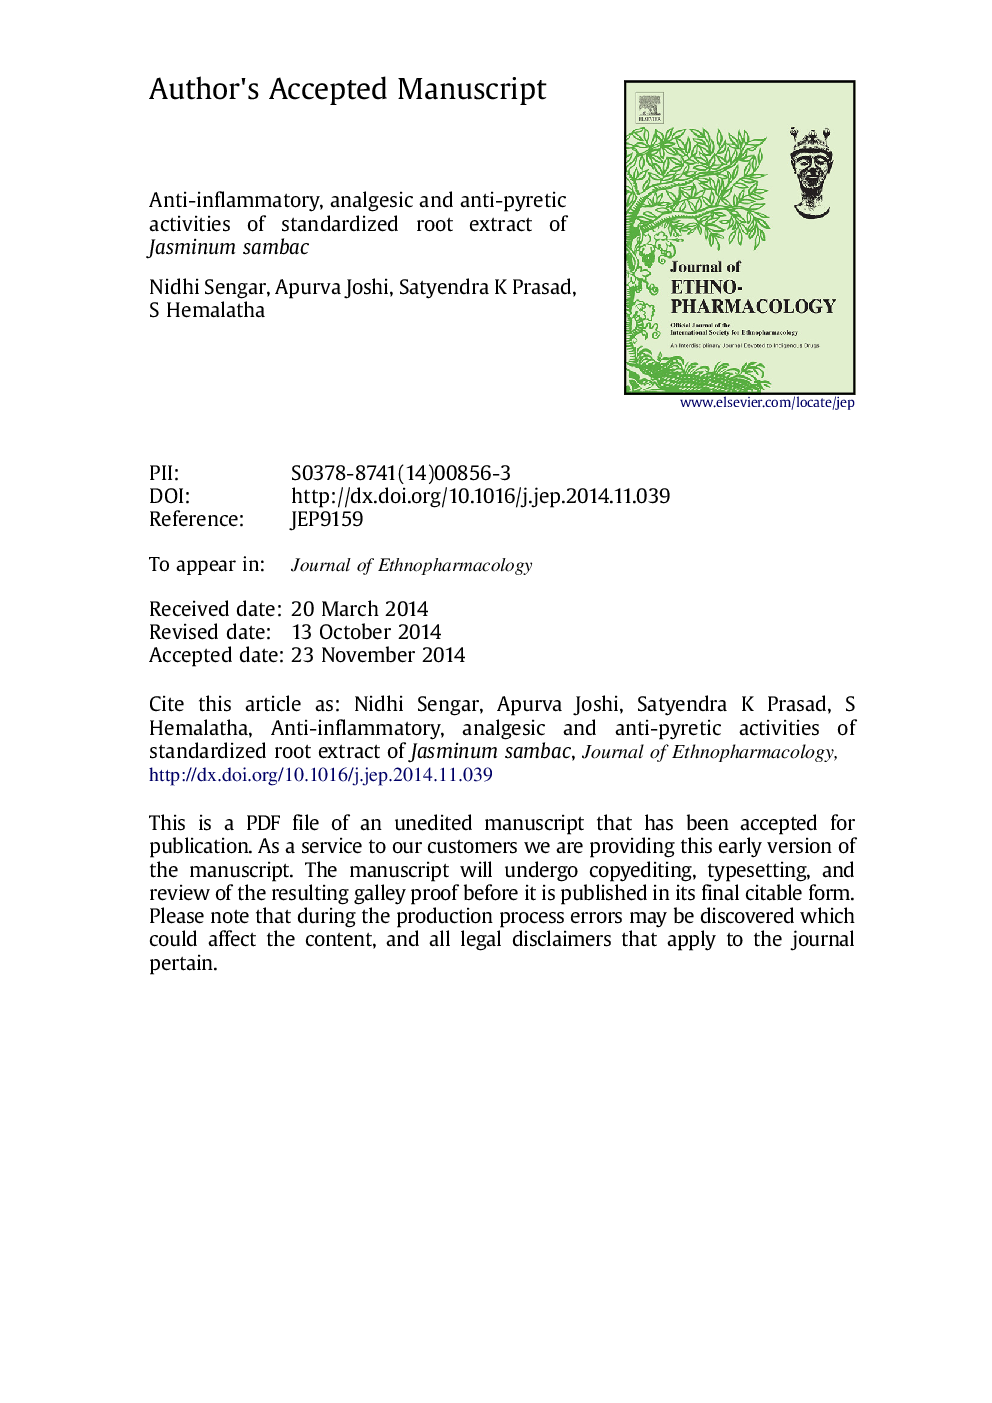 فعالیت ضد التهابی، ضد درد و ضد پیریت عصاره ریشه استاندارد یاسمینوم سمباک 